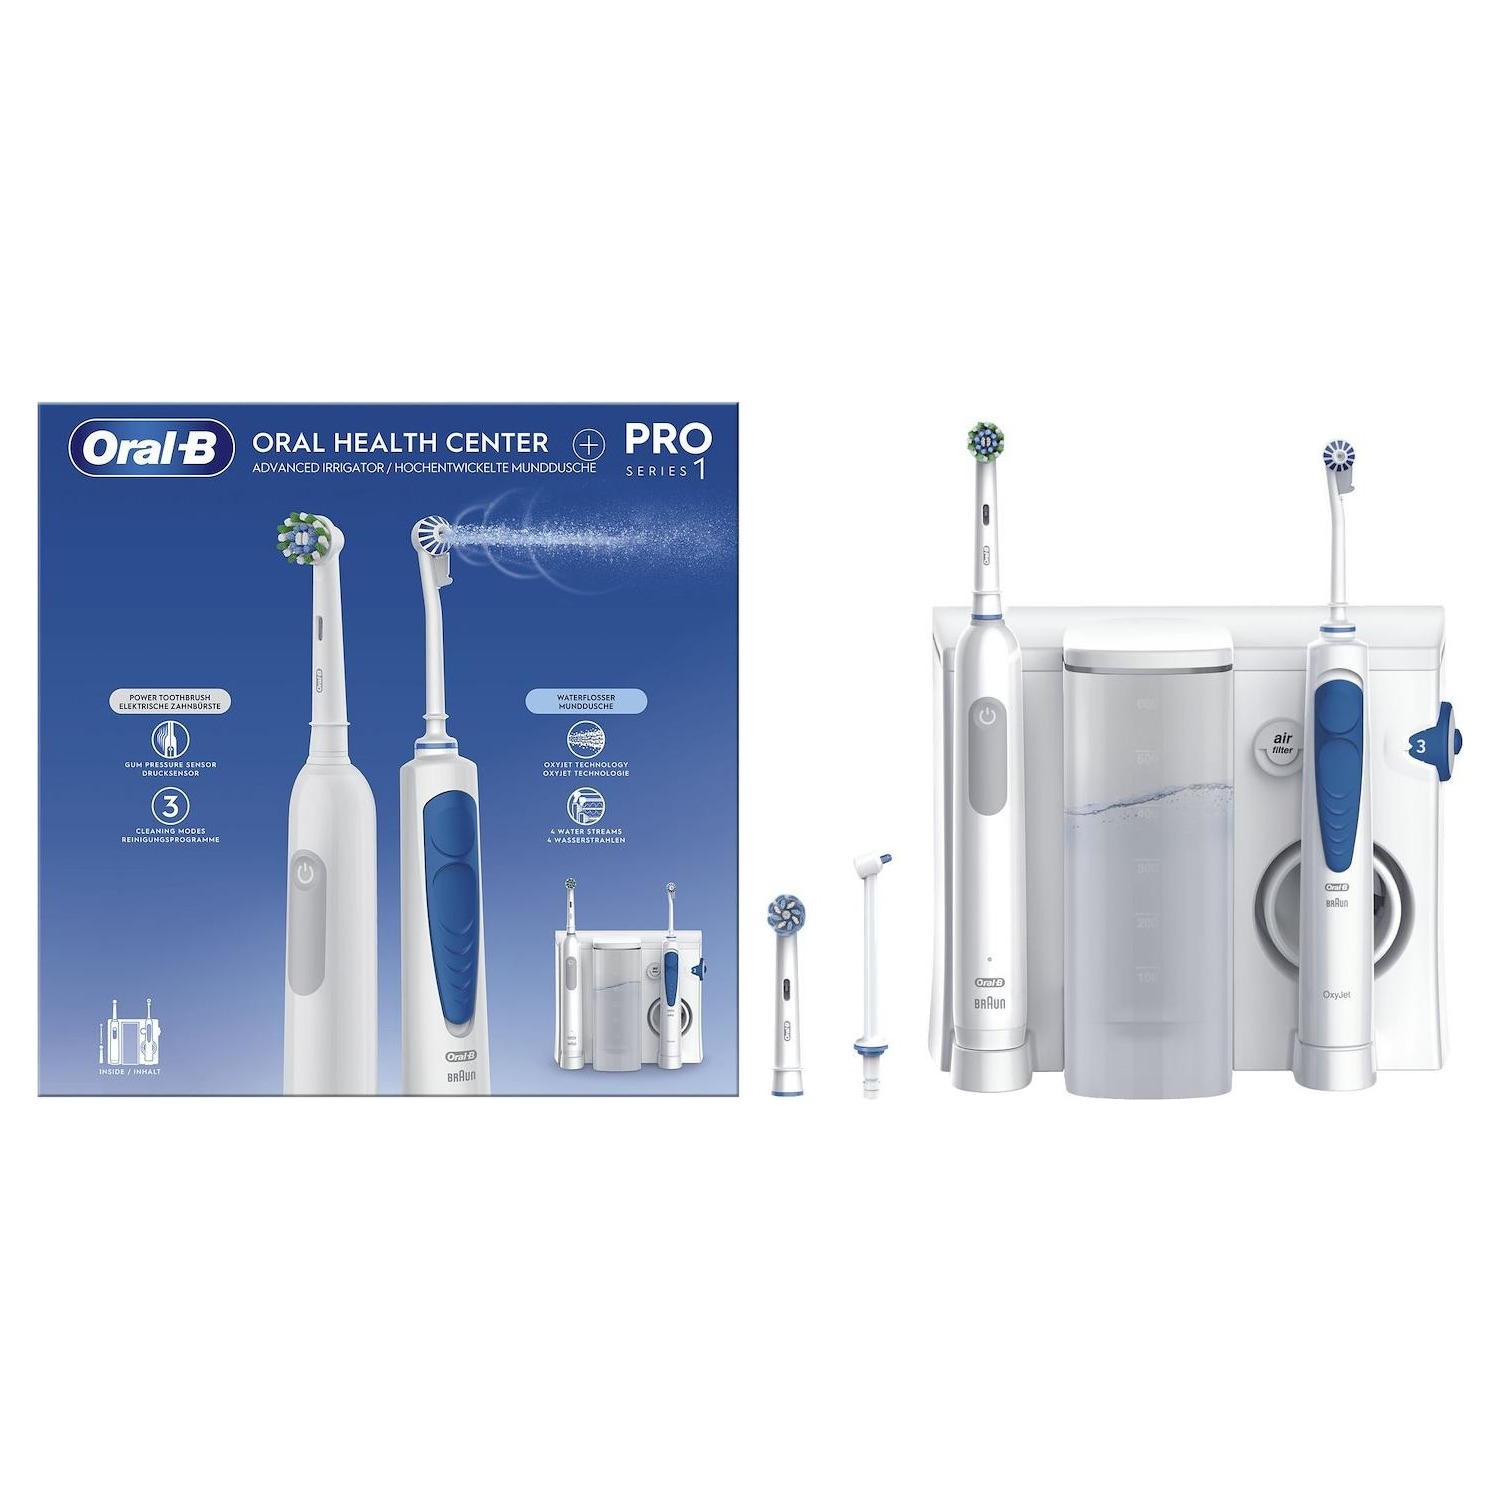 Image of Stazione orale Braun Oral-B idropulsore MD20 + spazzolino elettrico Braun Oral-B PRO1